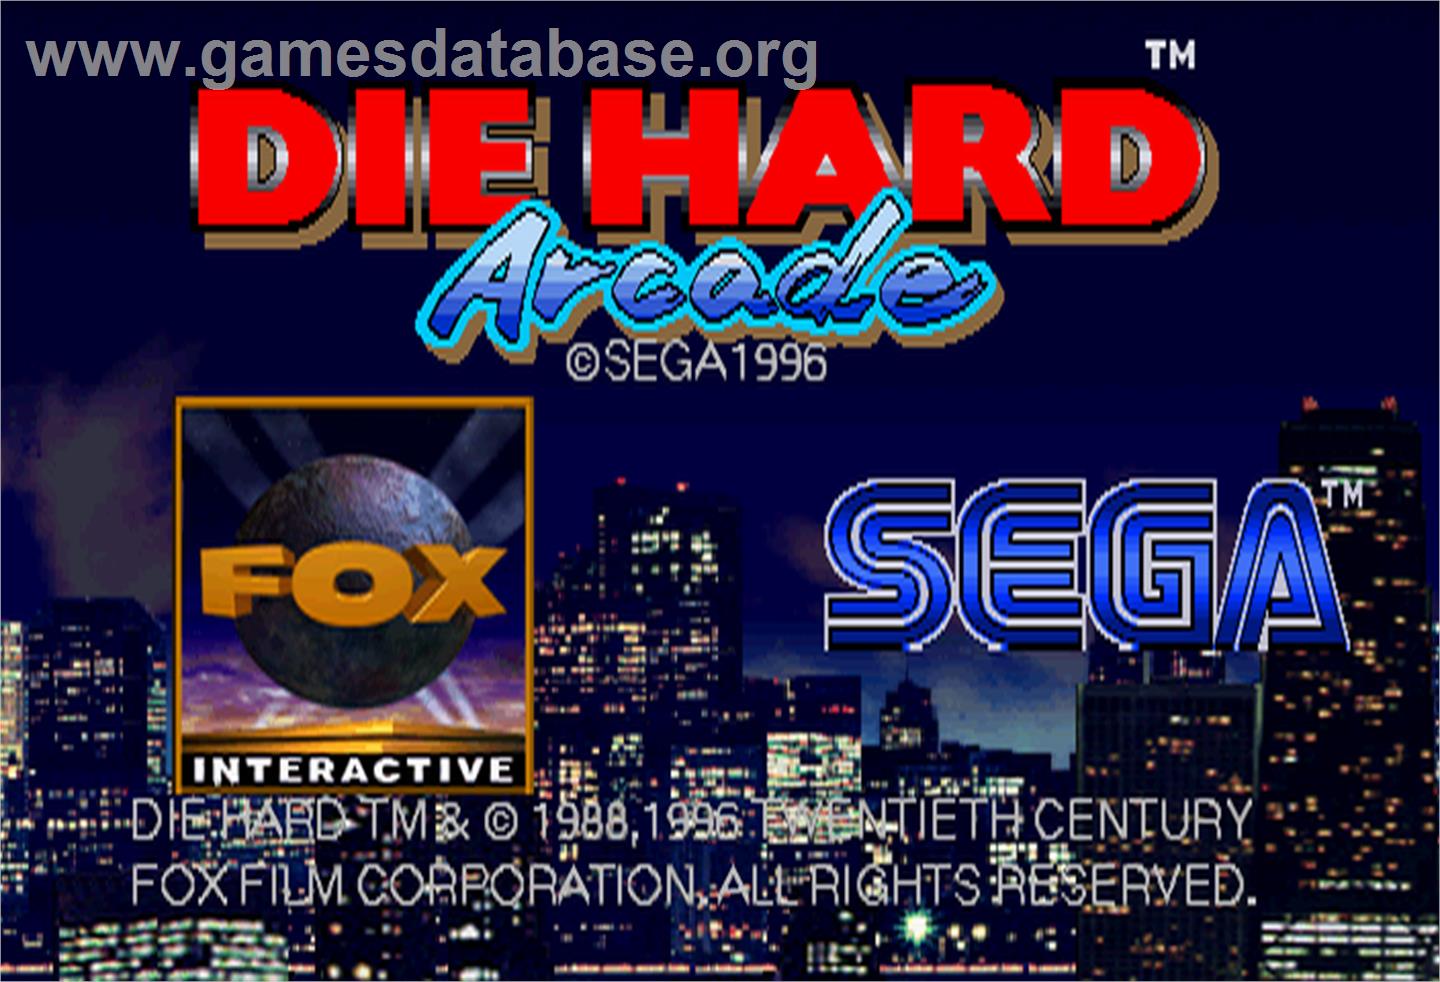 Die Hard Arcade - Arcade - Artwork - Title Screen